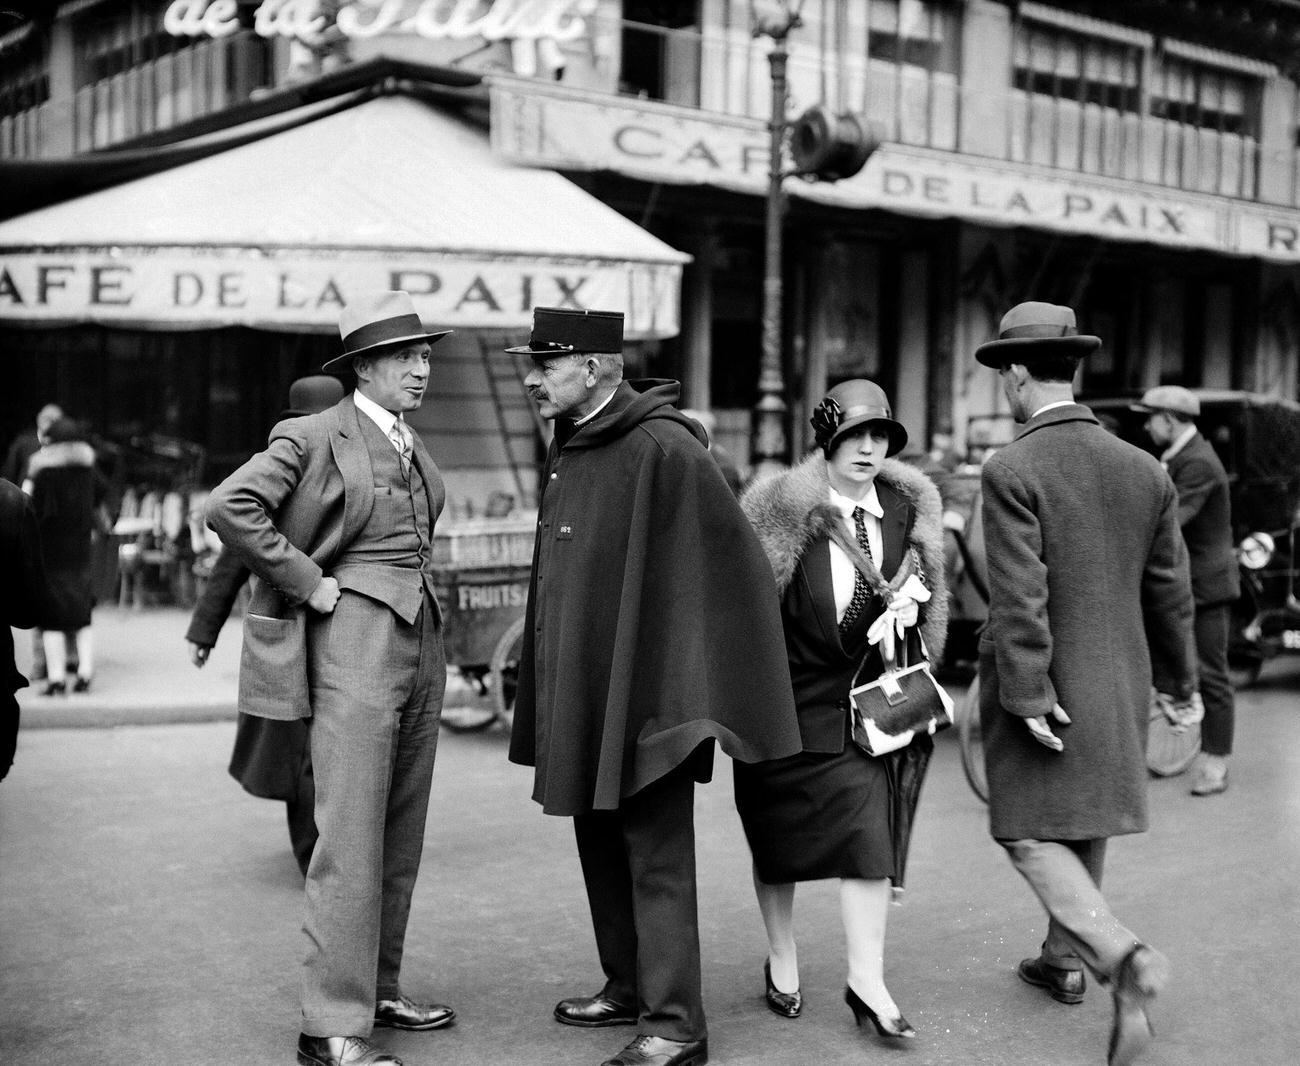 Danish Journalist Jorgen Bast Speaking with Policeman, Café de la Paix, Paris, 1928